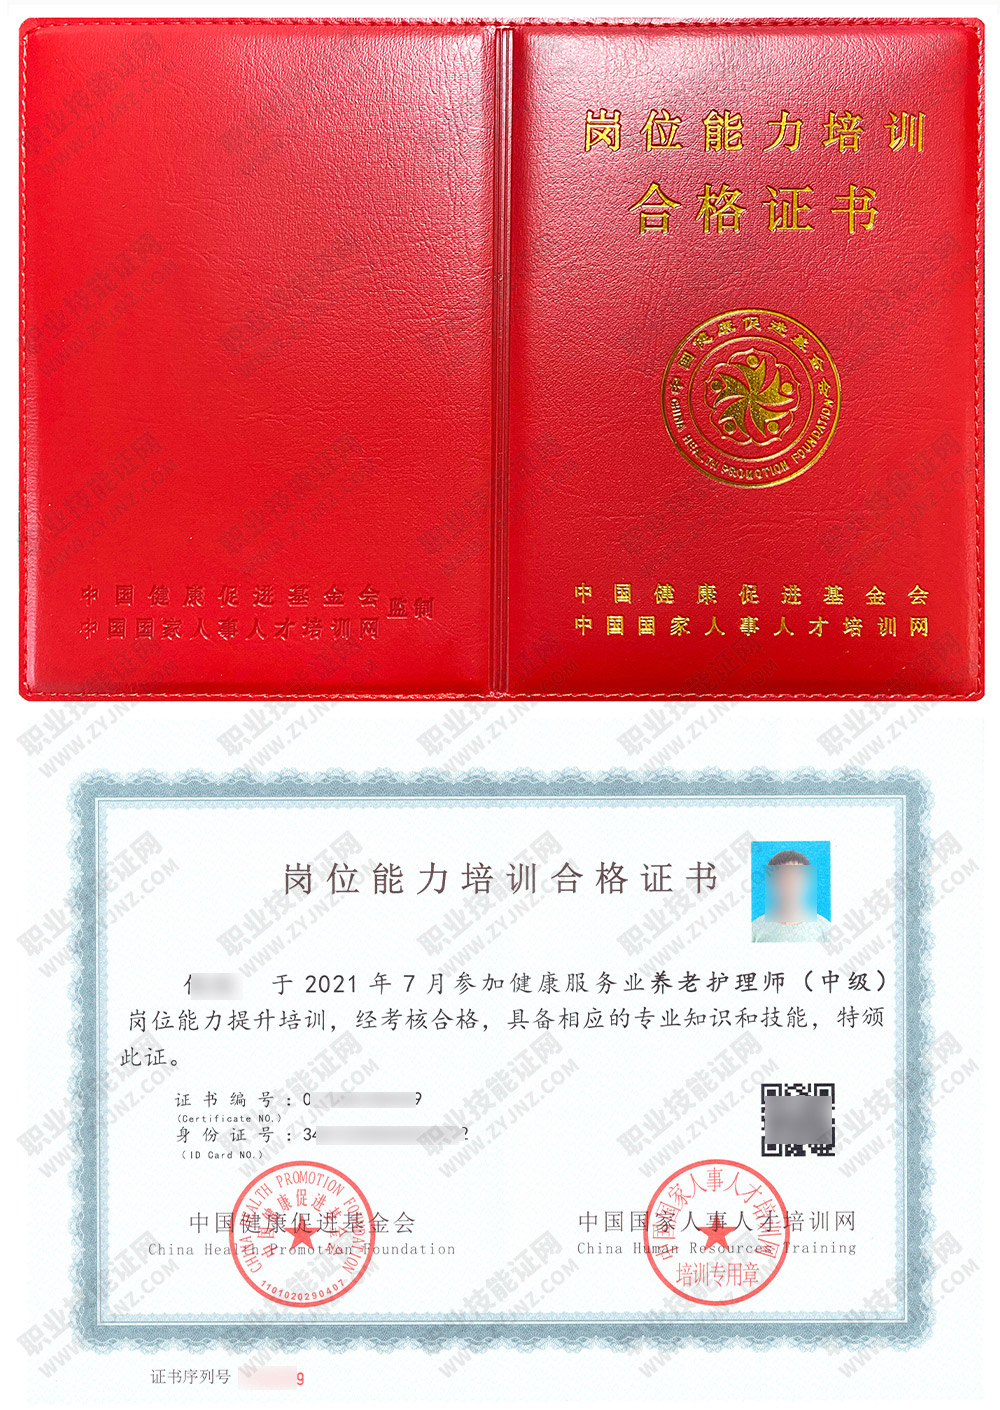 中国国家人事人才培训网 养老护理师 岗位能力培训合格证书